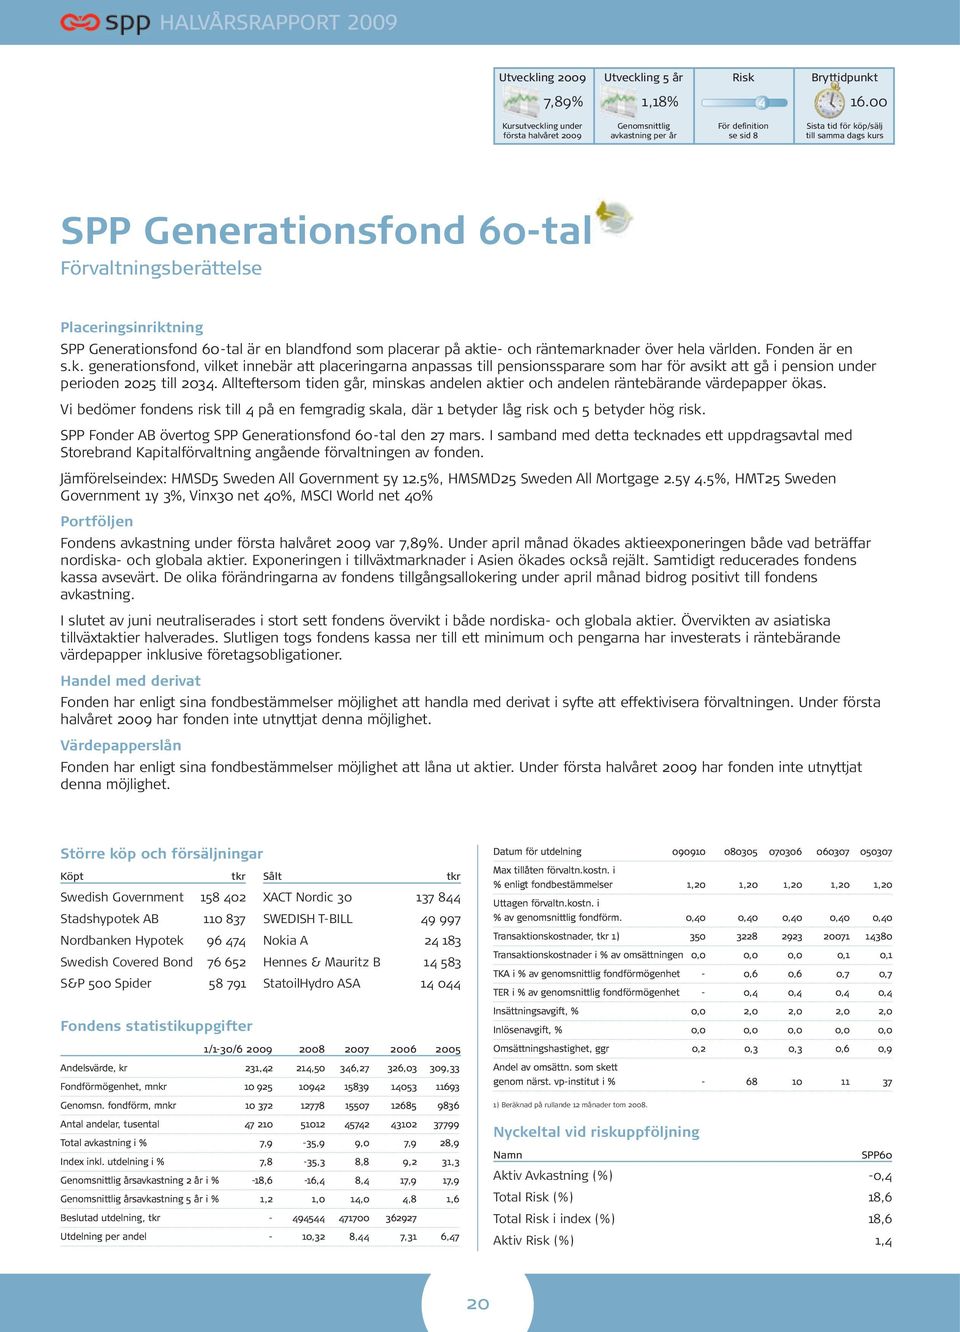 Placeringsinriktning SPP Generationsfond 60-tal är en blandfond som placerar på aktie- och räntemarknader över hela världen. Fonden är en s.k. generationsfond, vilket innebär att placeringarna anpassas till pensionssparare som har för avsikt att gå i pension under perioden 2025 till 2034.